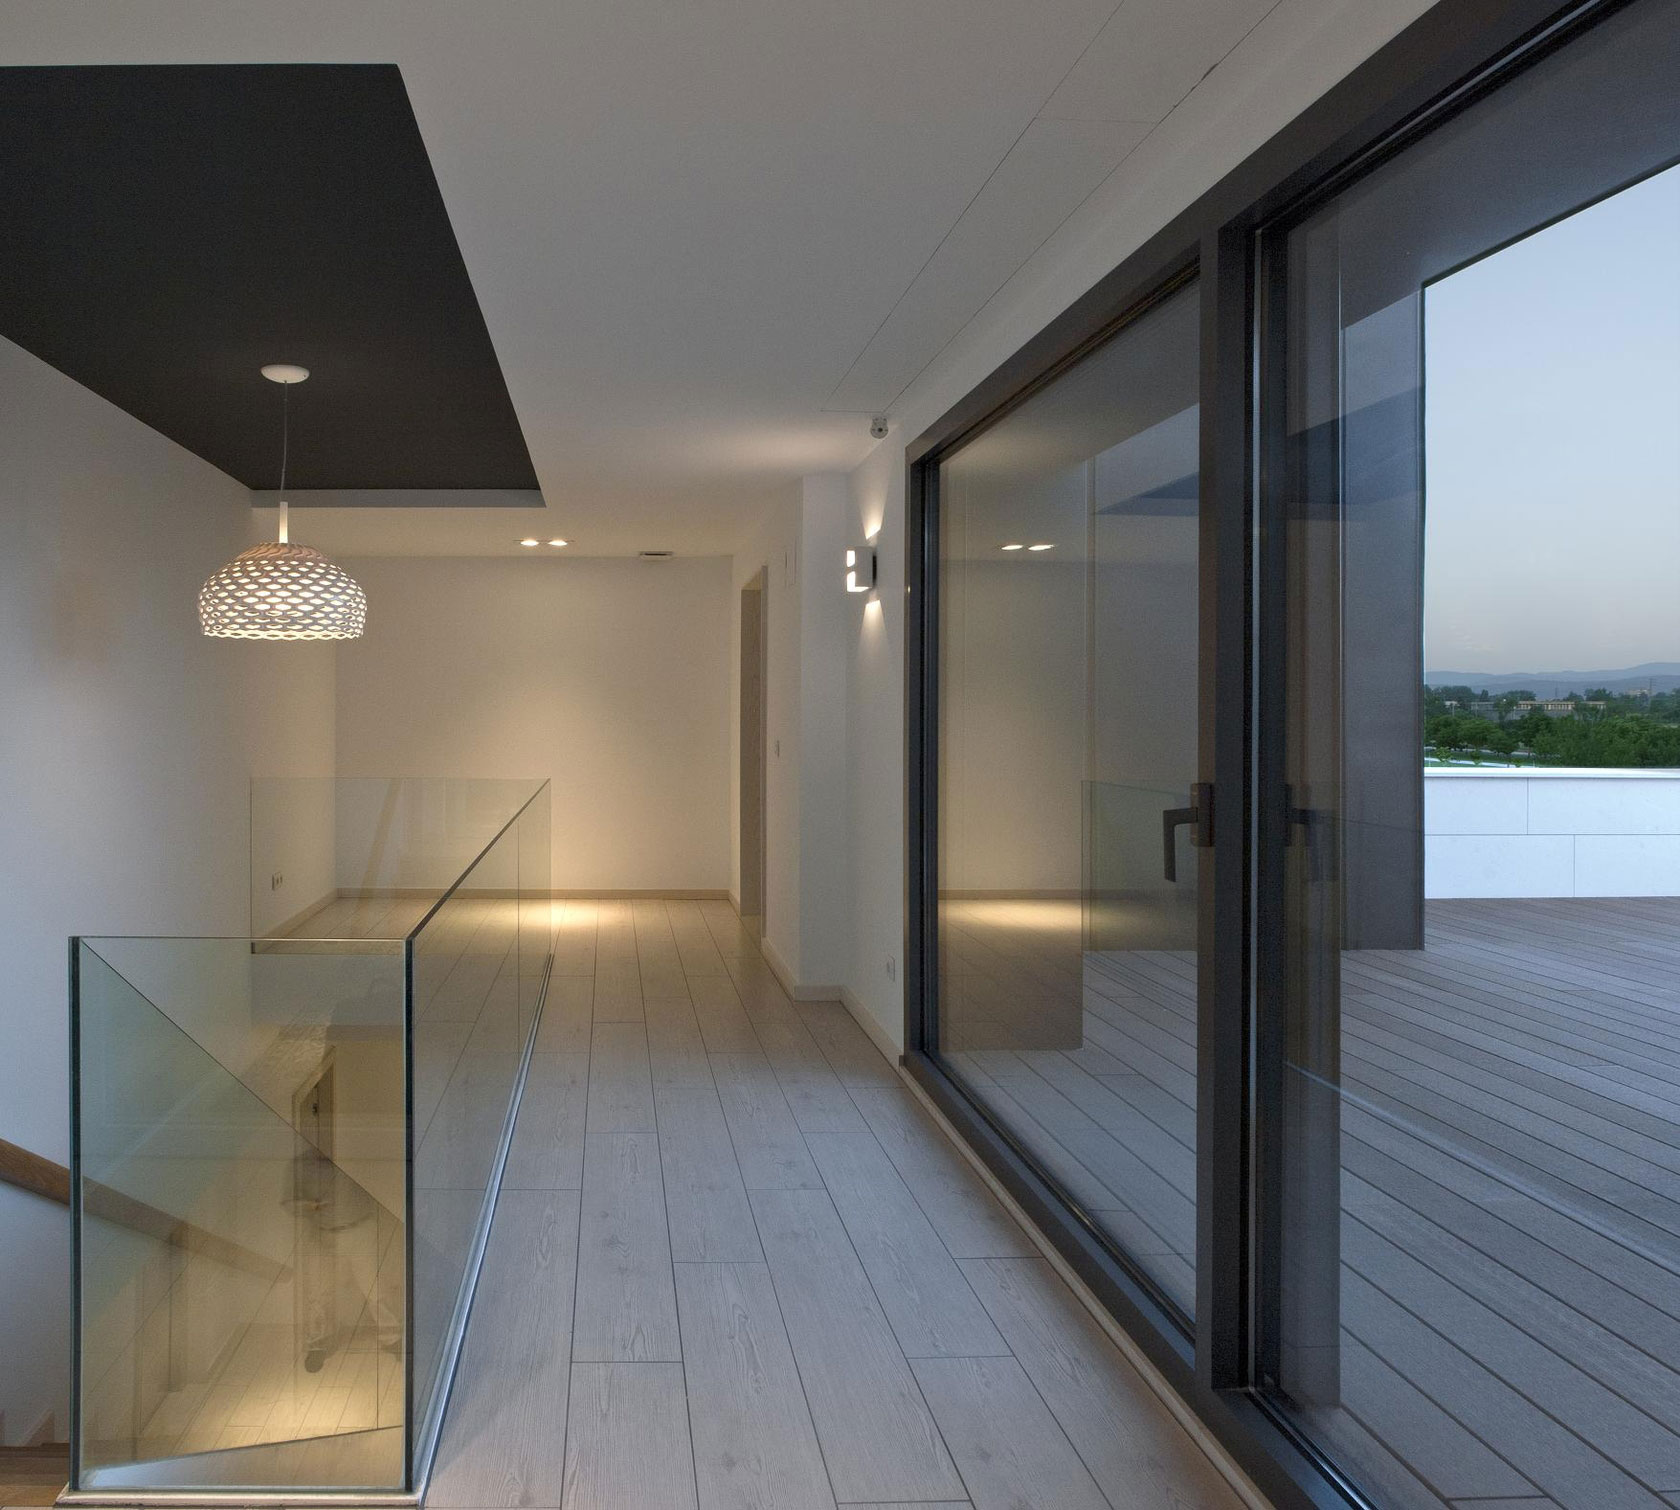 Интерьер двухэтажного особняка в Испании от дизайнеров Patxi Cortazar Arquitecto, Виктория-Гастейс